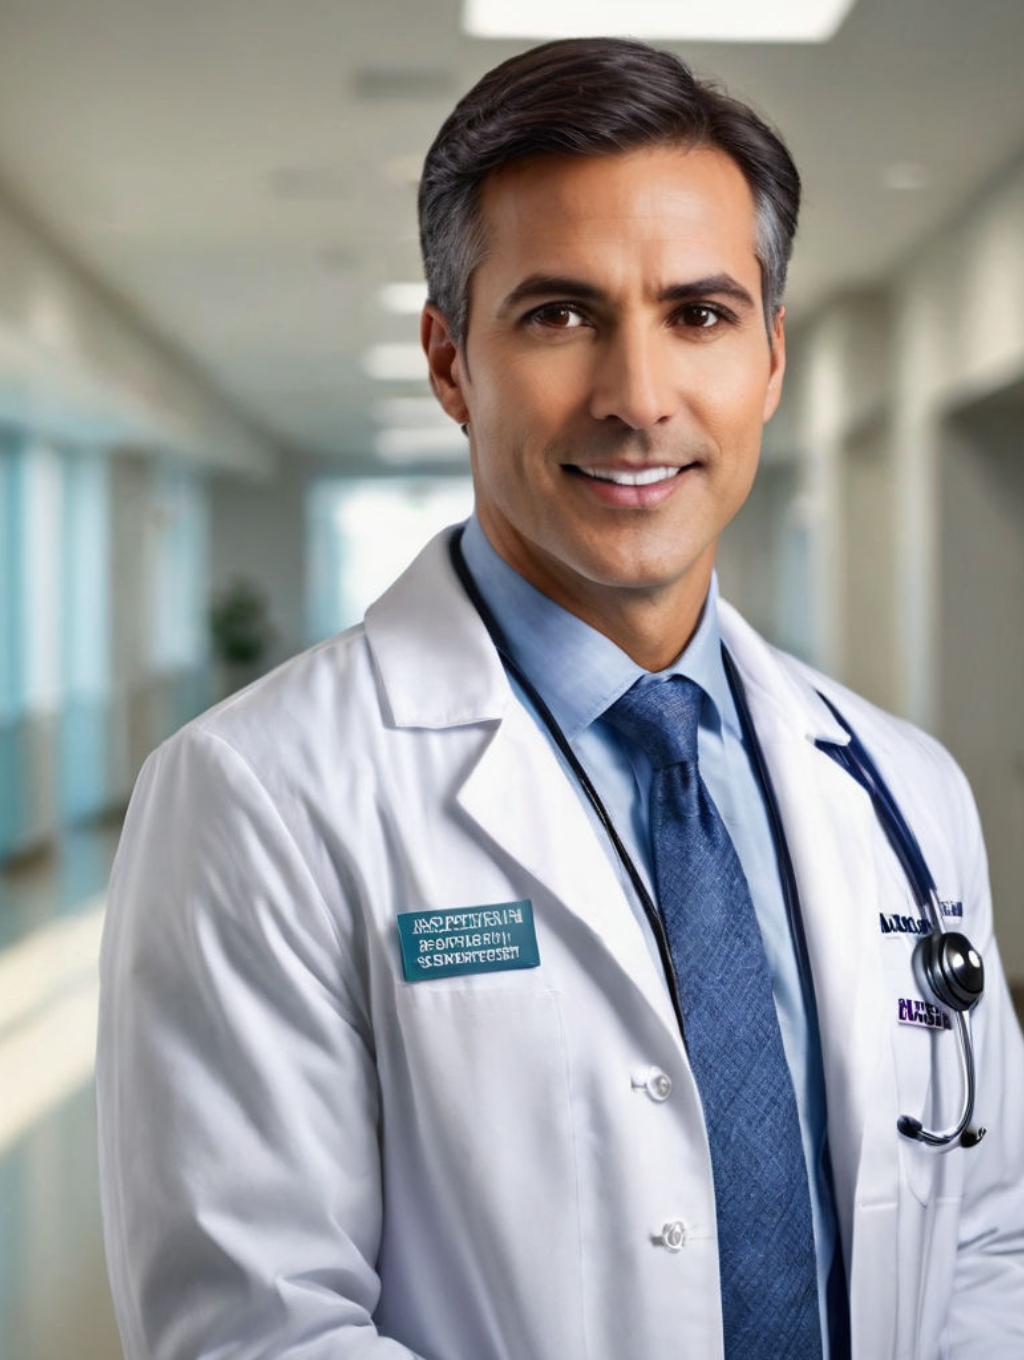 Doctors & Nurses Men: Custom Frames & Profile Pictures-Theme:1